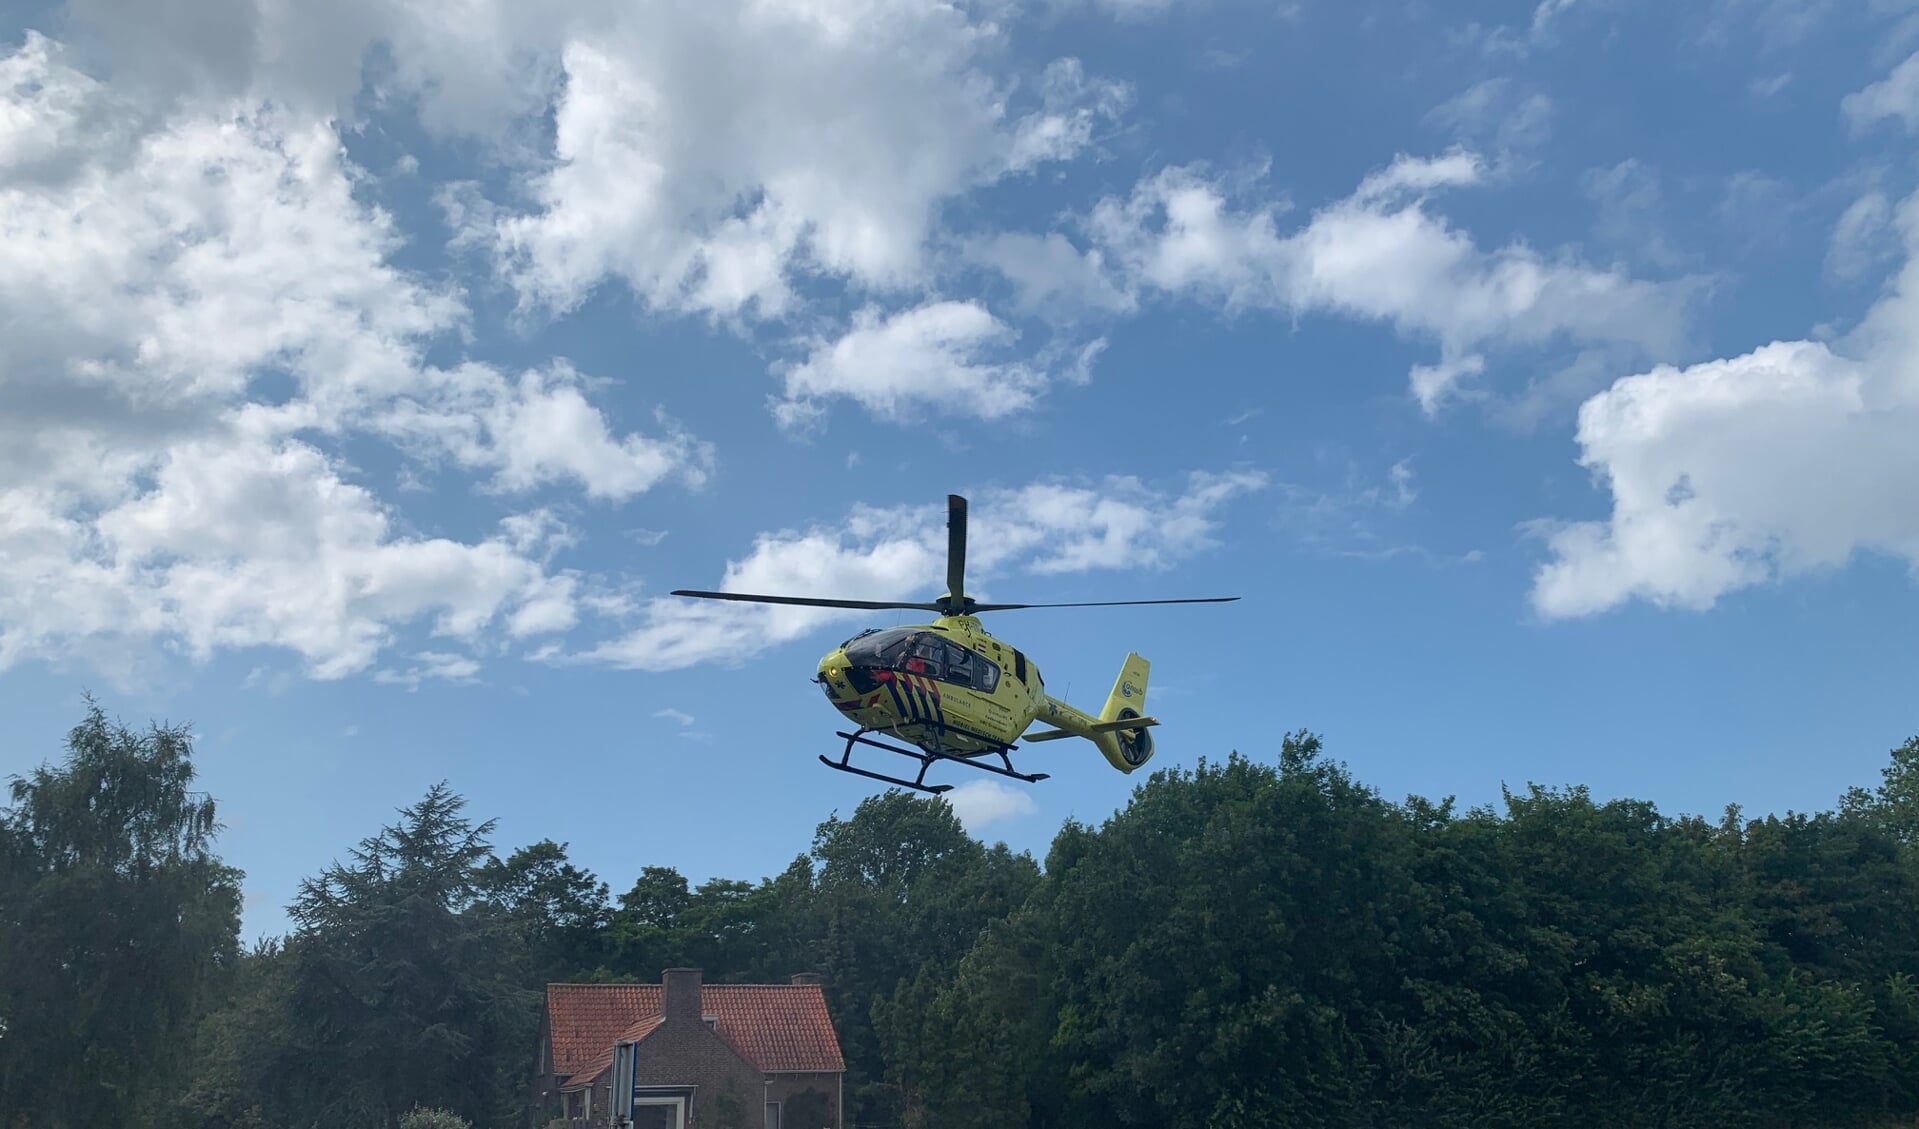 De traumahelikopter landde op een nabijgelegen grasveld.